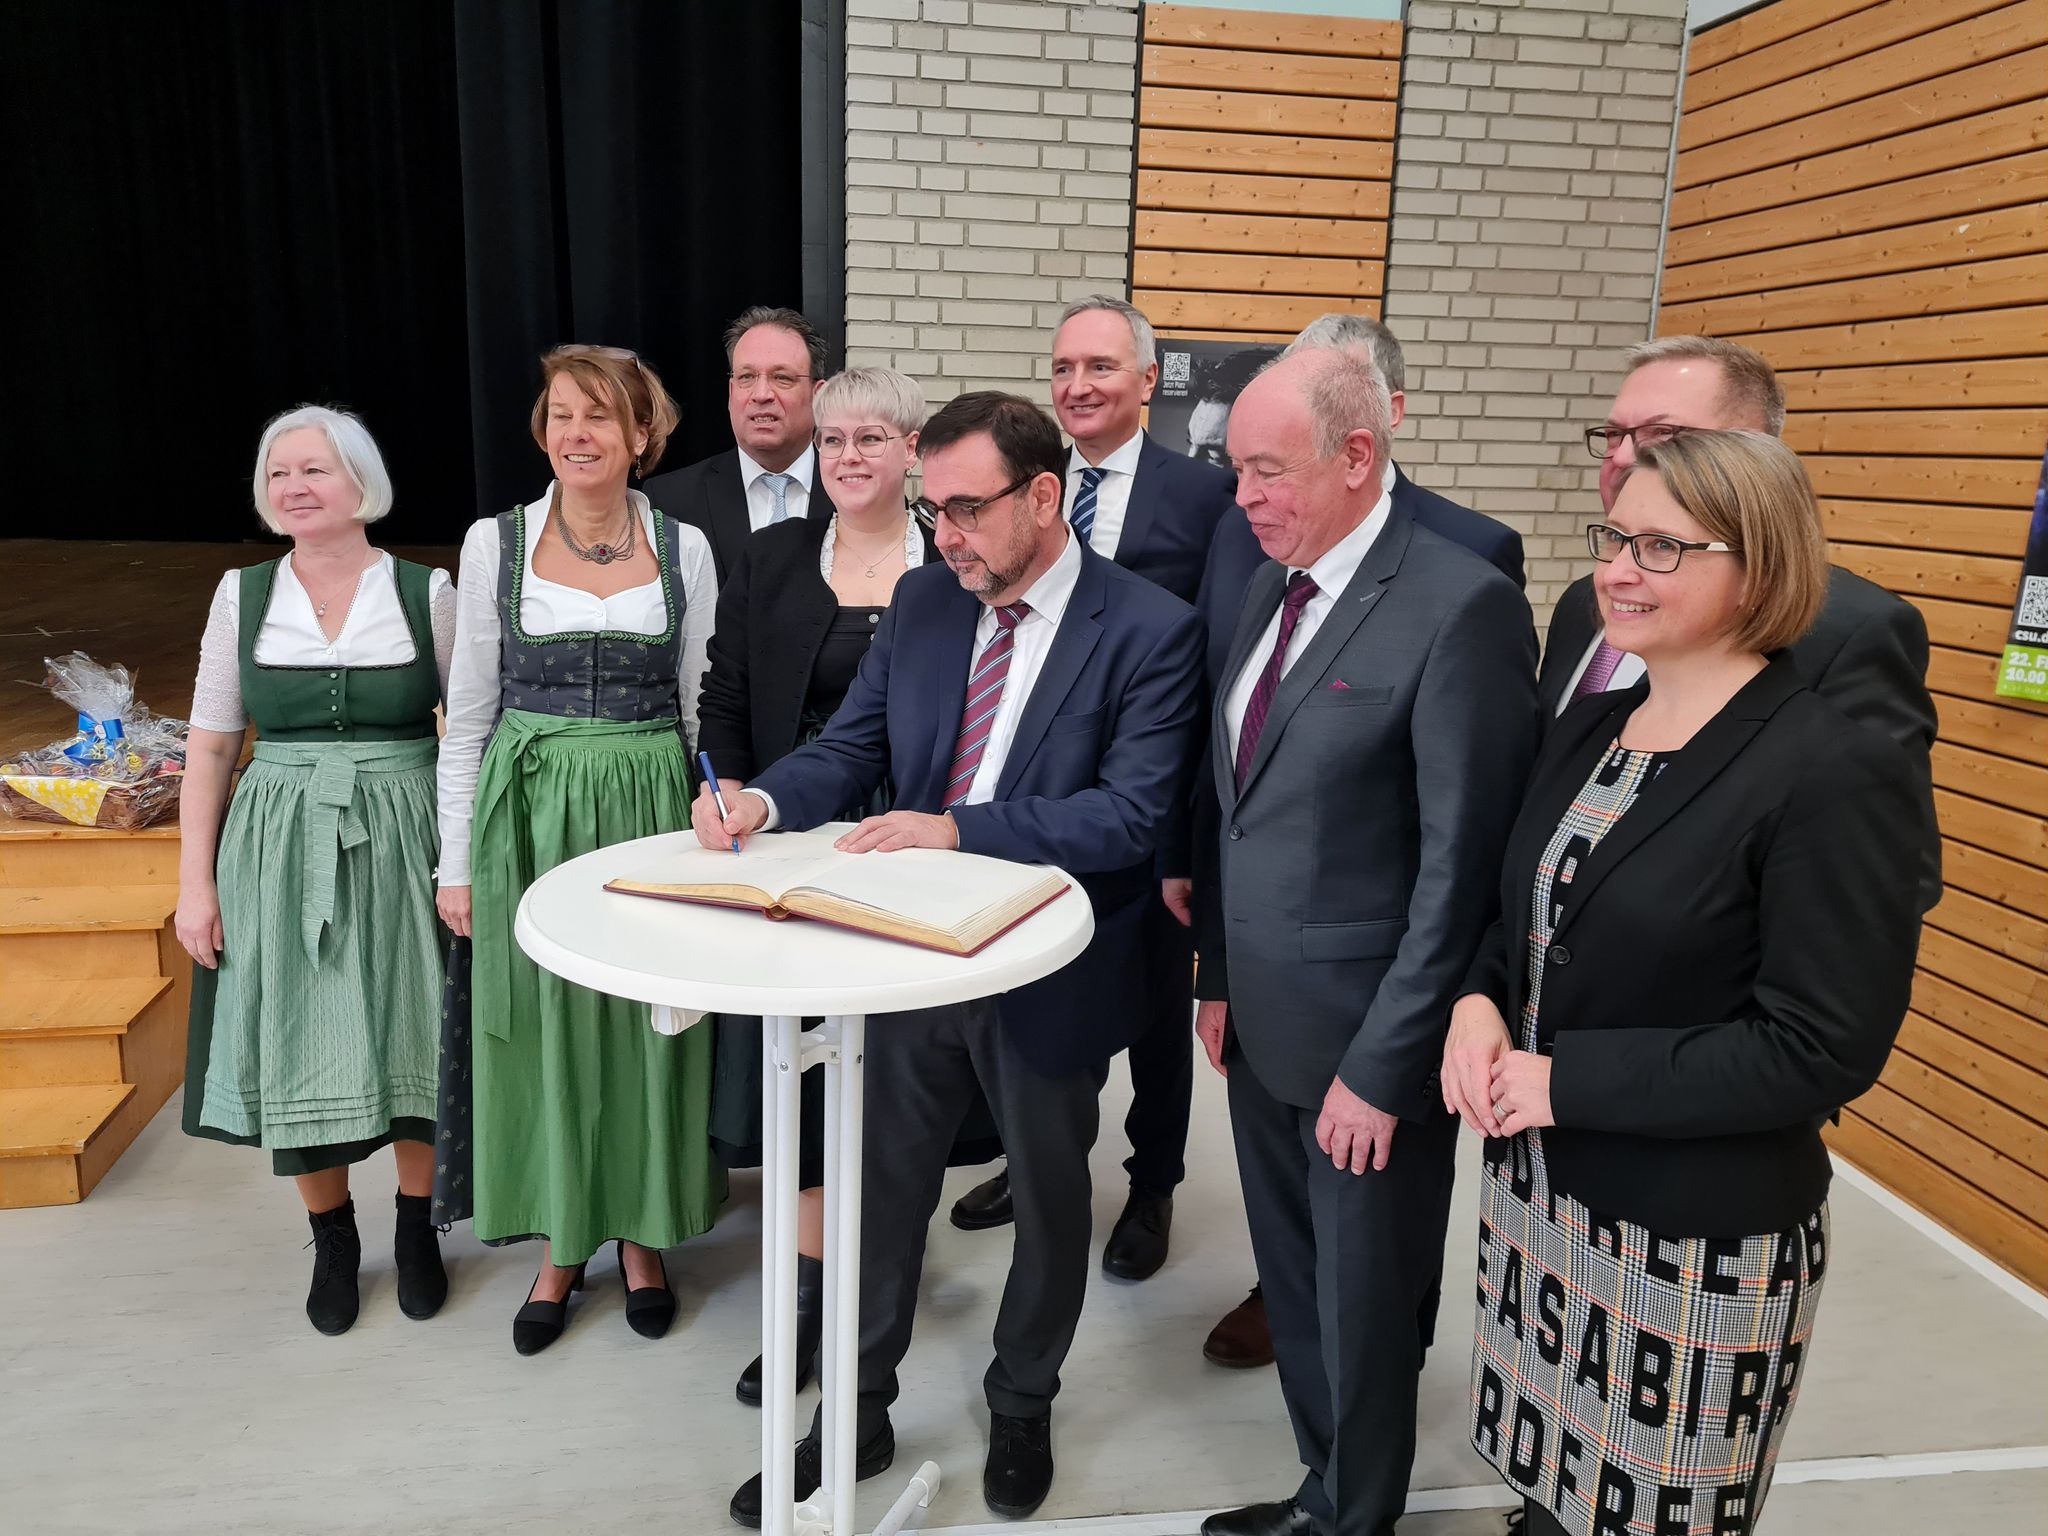 Gesundheitsminister Klaus Holetschek beim Eintrag ins Goldene Buch der Gemeinde Kümmersbruck Foto: Pressedienst Wagner